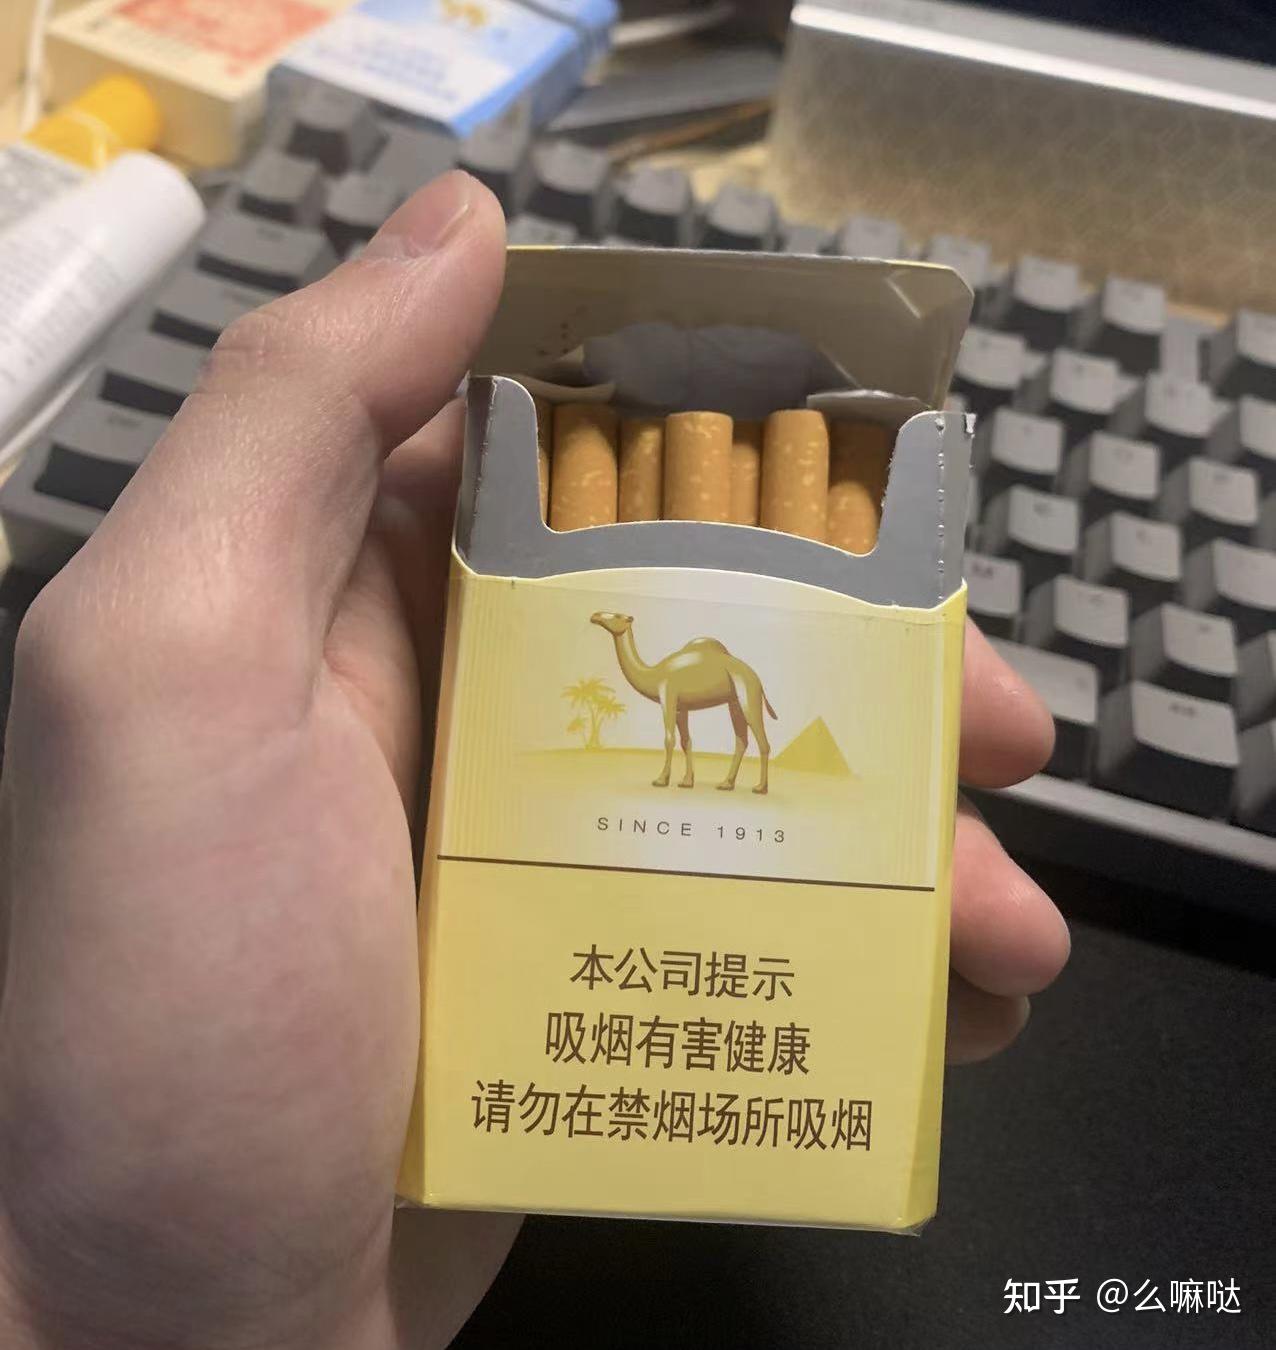 无意间的 骆驼！！ - 香烟品鉴 - 烟悦网论坛